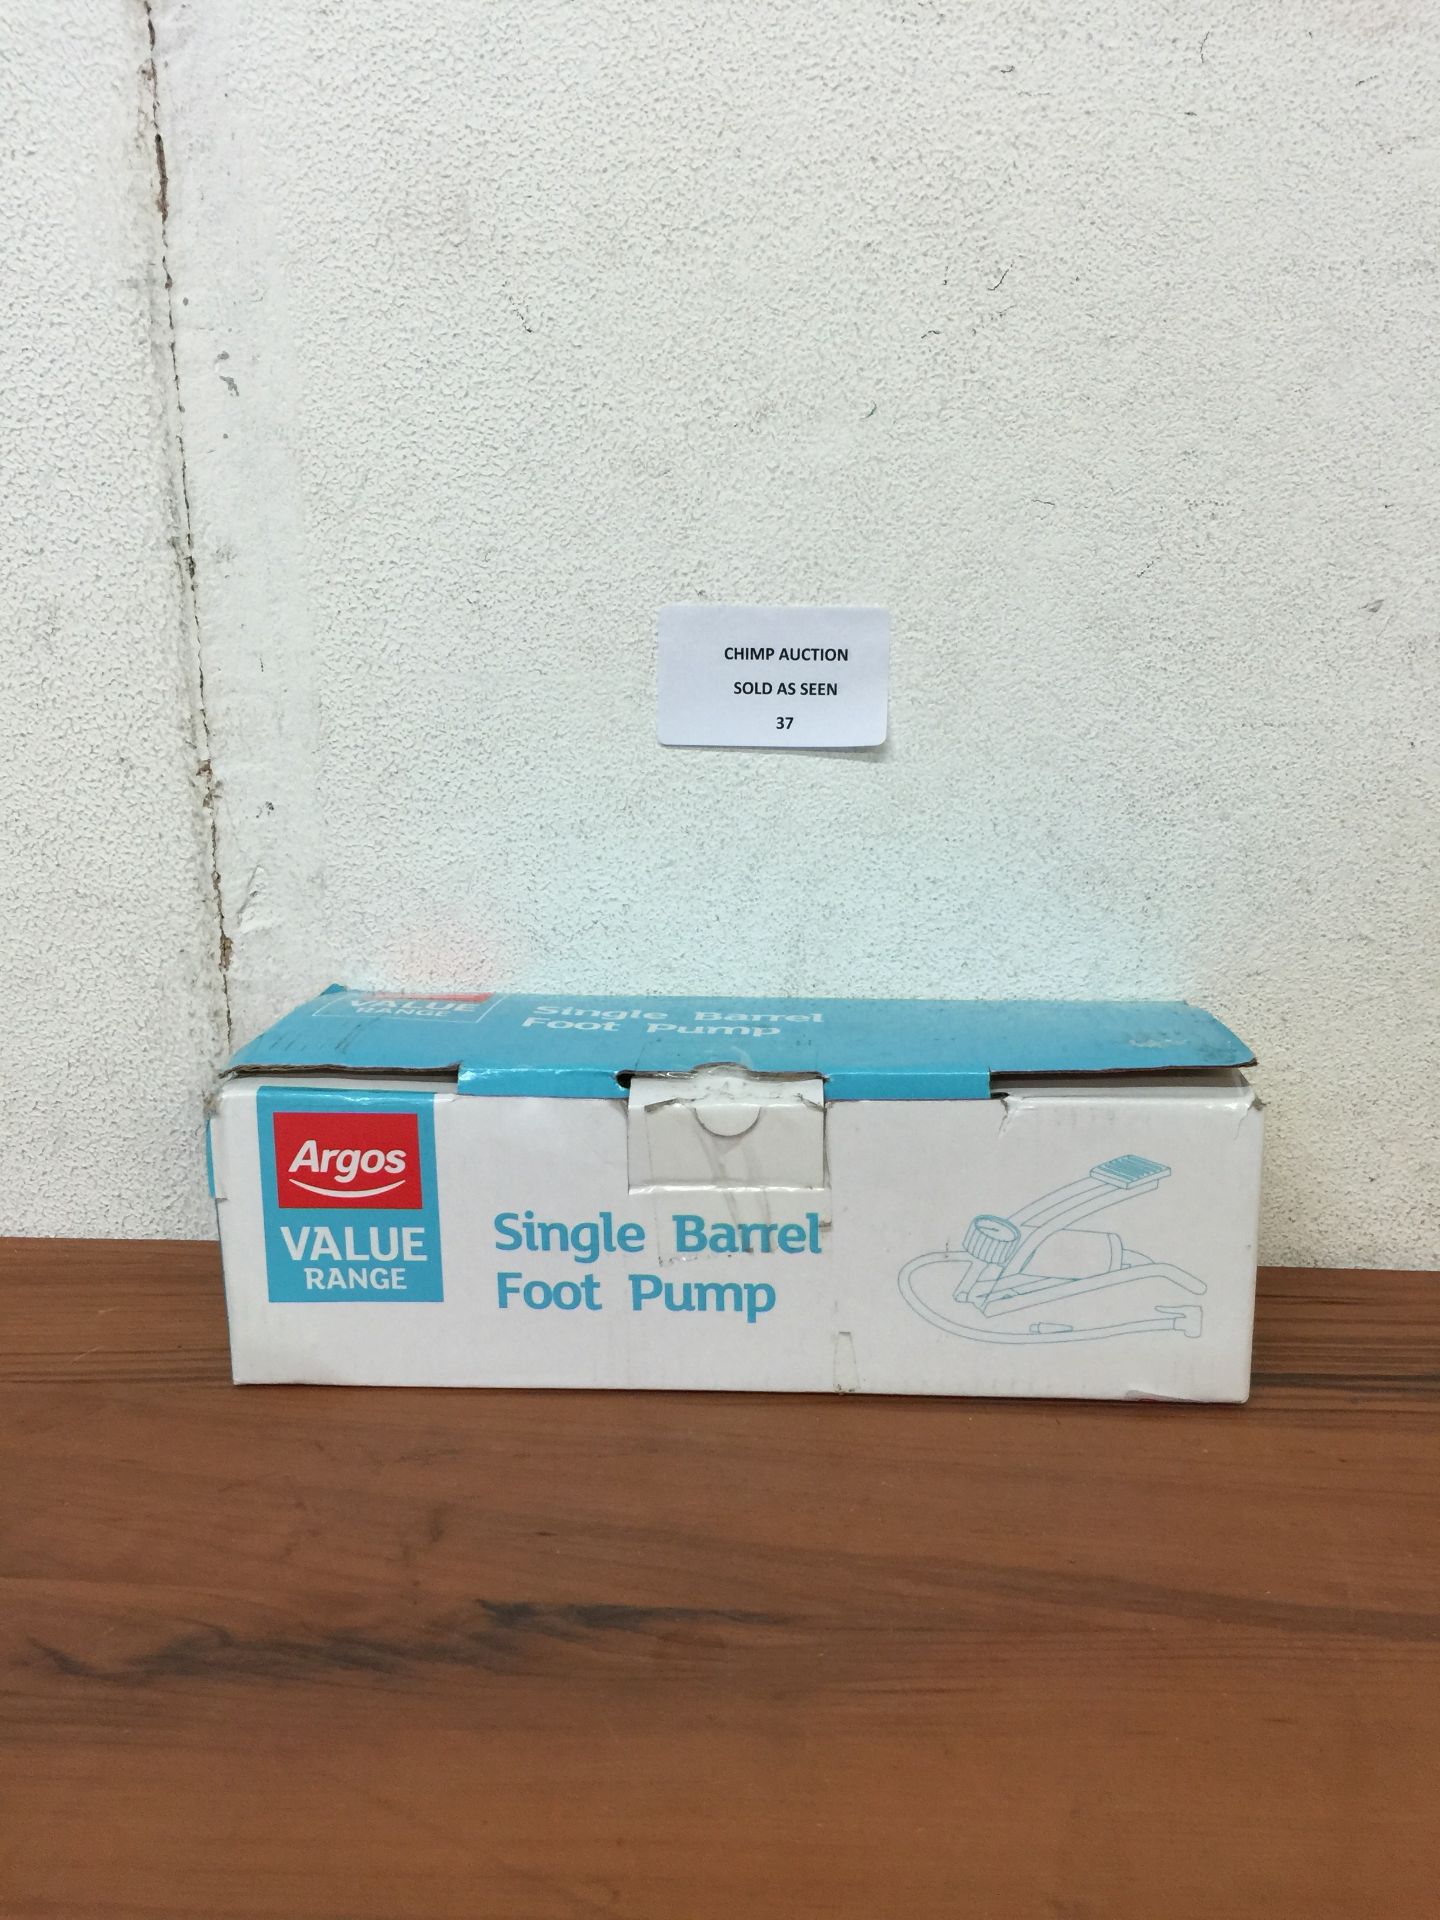 BOXED SINGLE BARREL FOOT PUMP